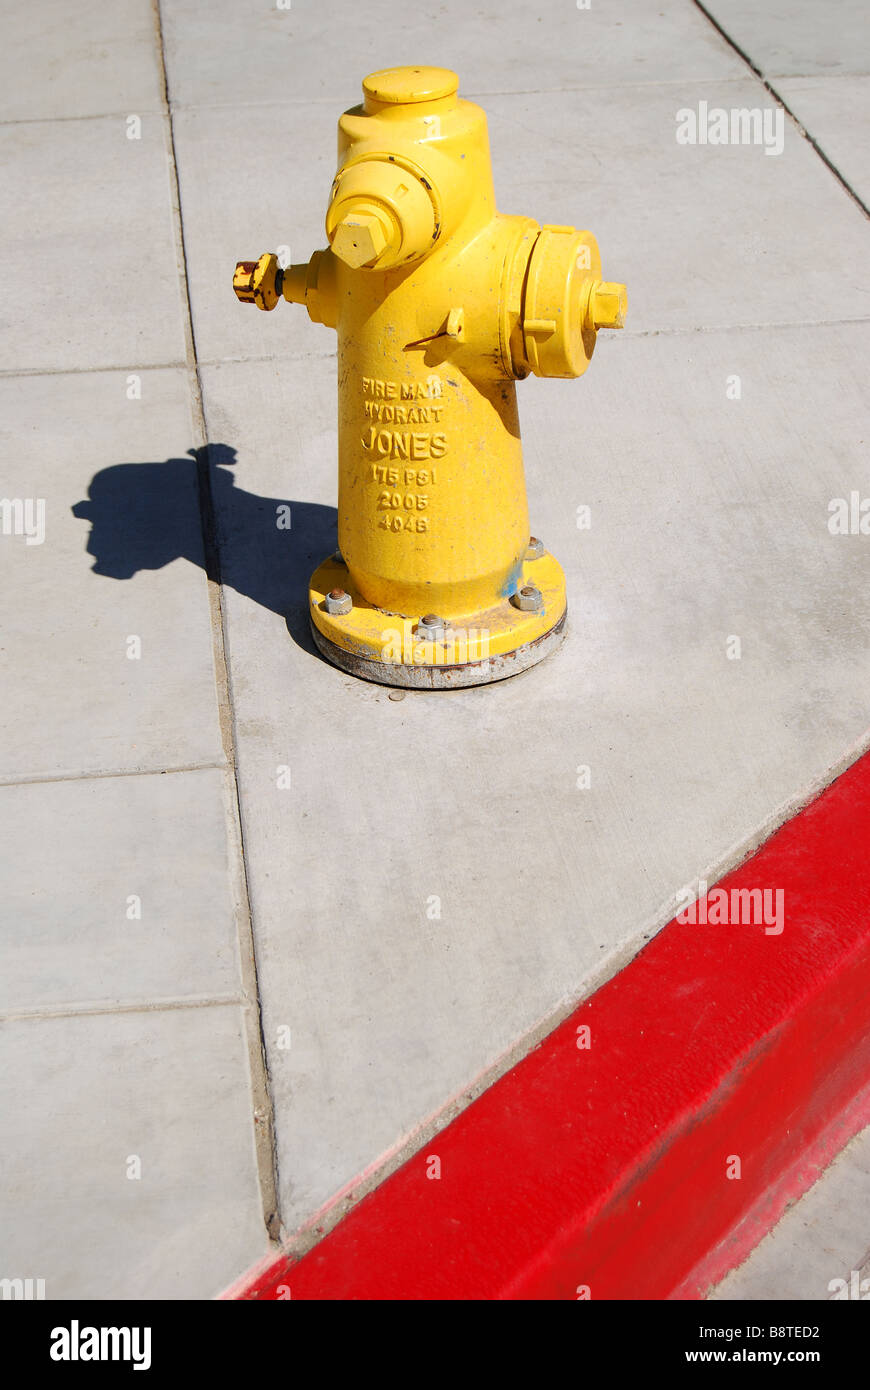 Hidrante en la acera, Los Angeles, California, Estados Unidos de América Foto de stock